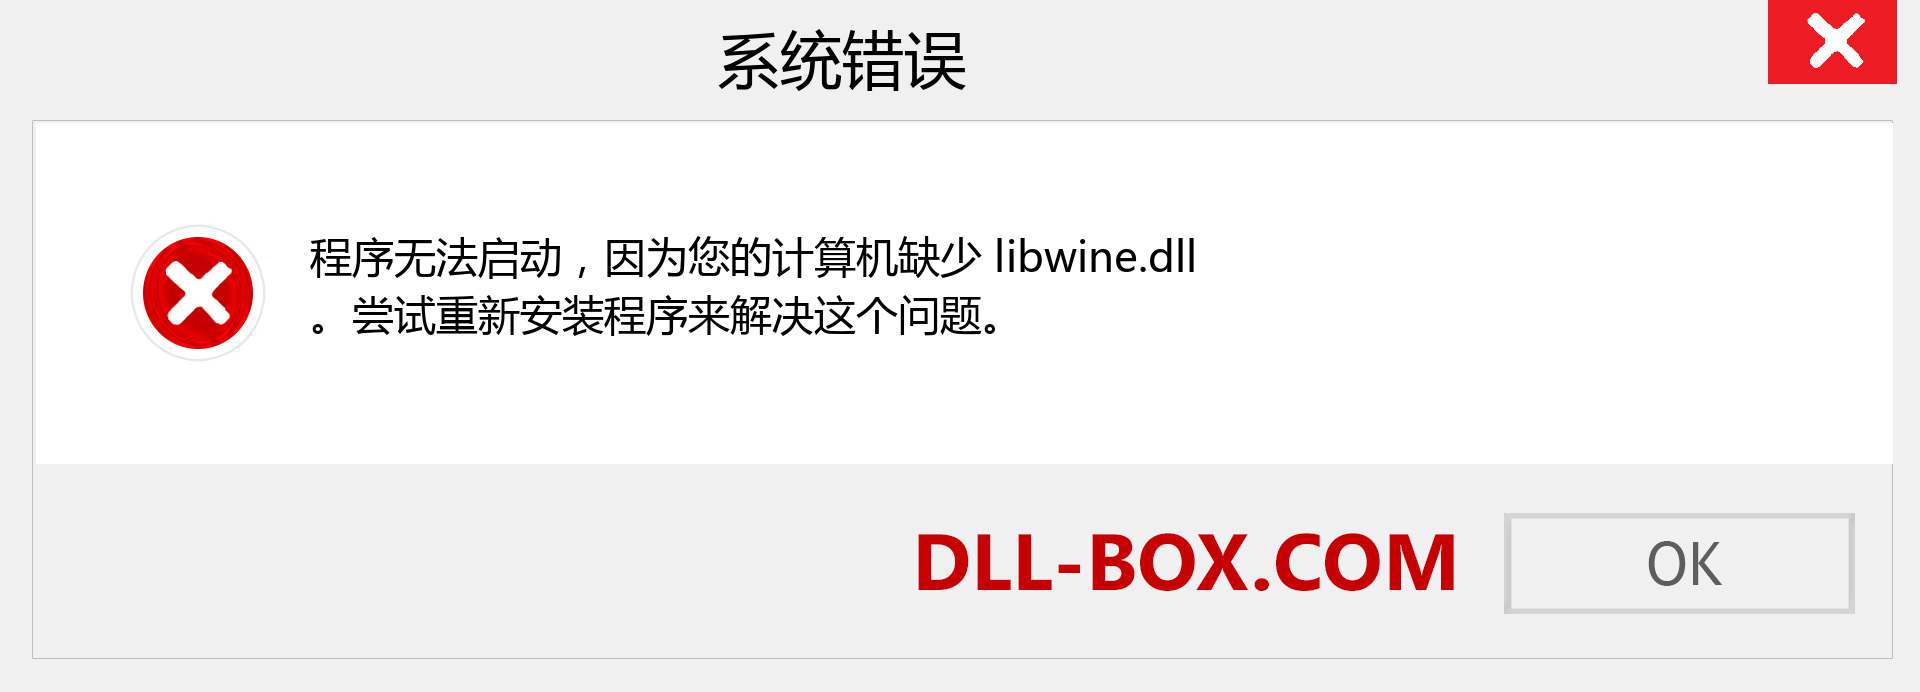 libwine.dll 文件丢失？。 适用于 Windows 7、8、10 的下载 - 修复 Windows、照片、图像上的 libwine dll 丢失错误